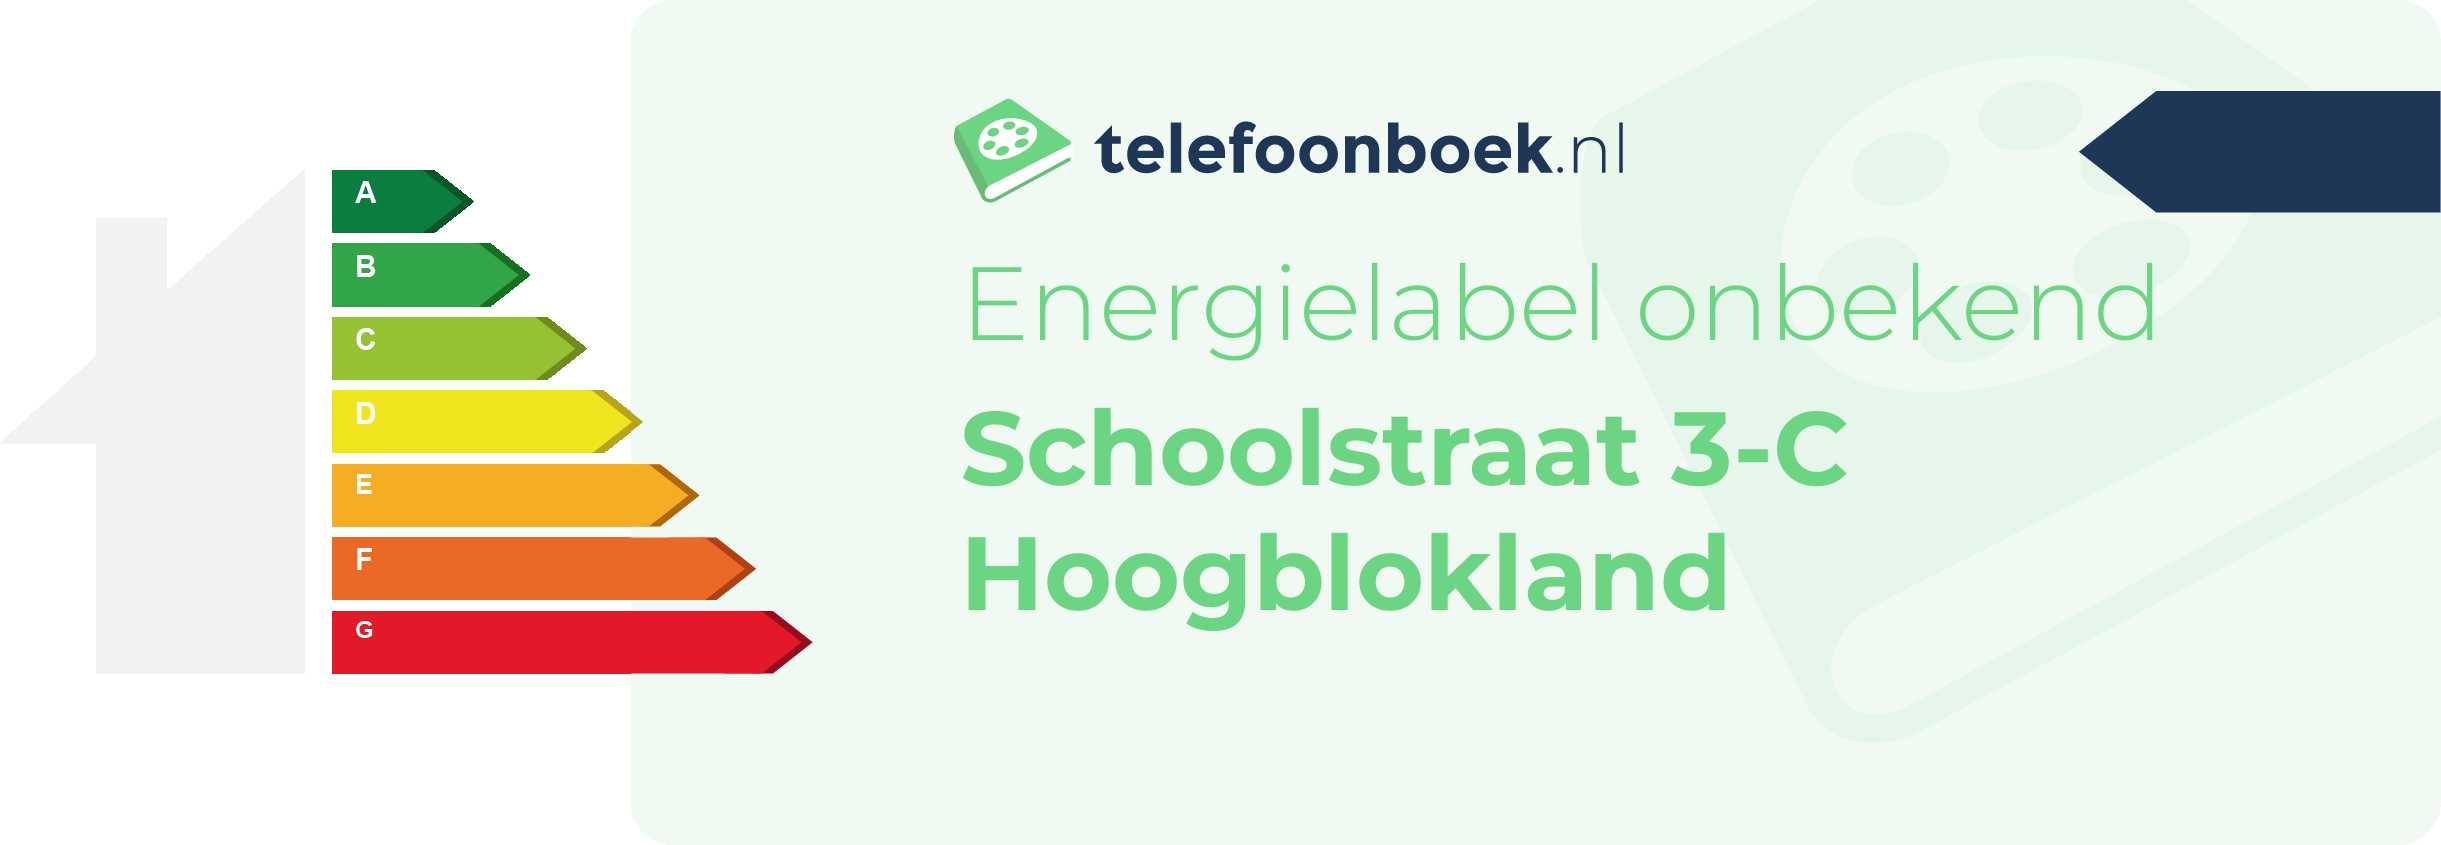 Energielabel Schoolstraat 3-C Hoogblokland